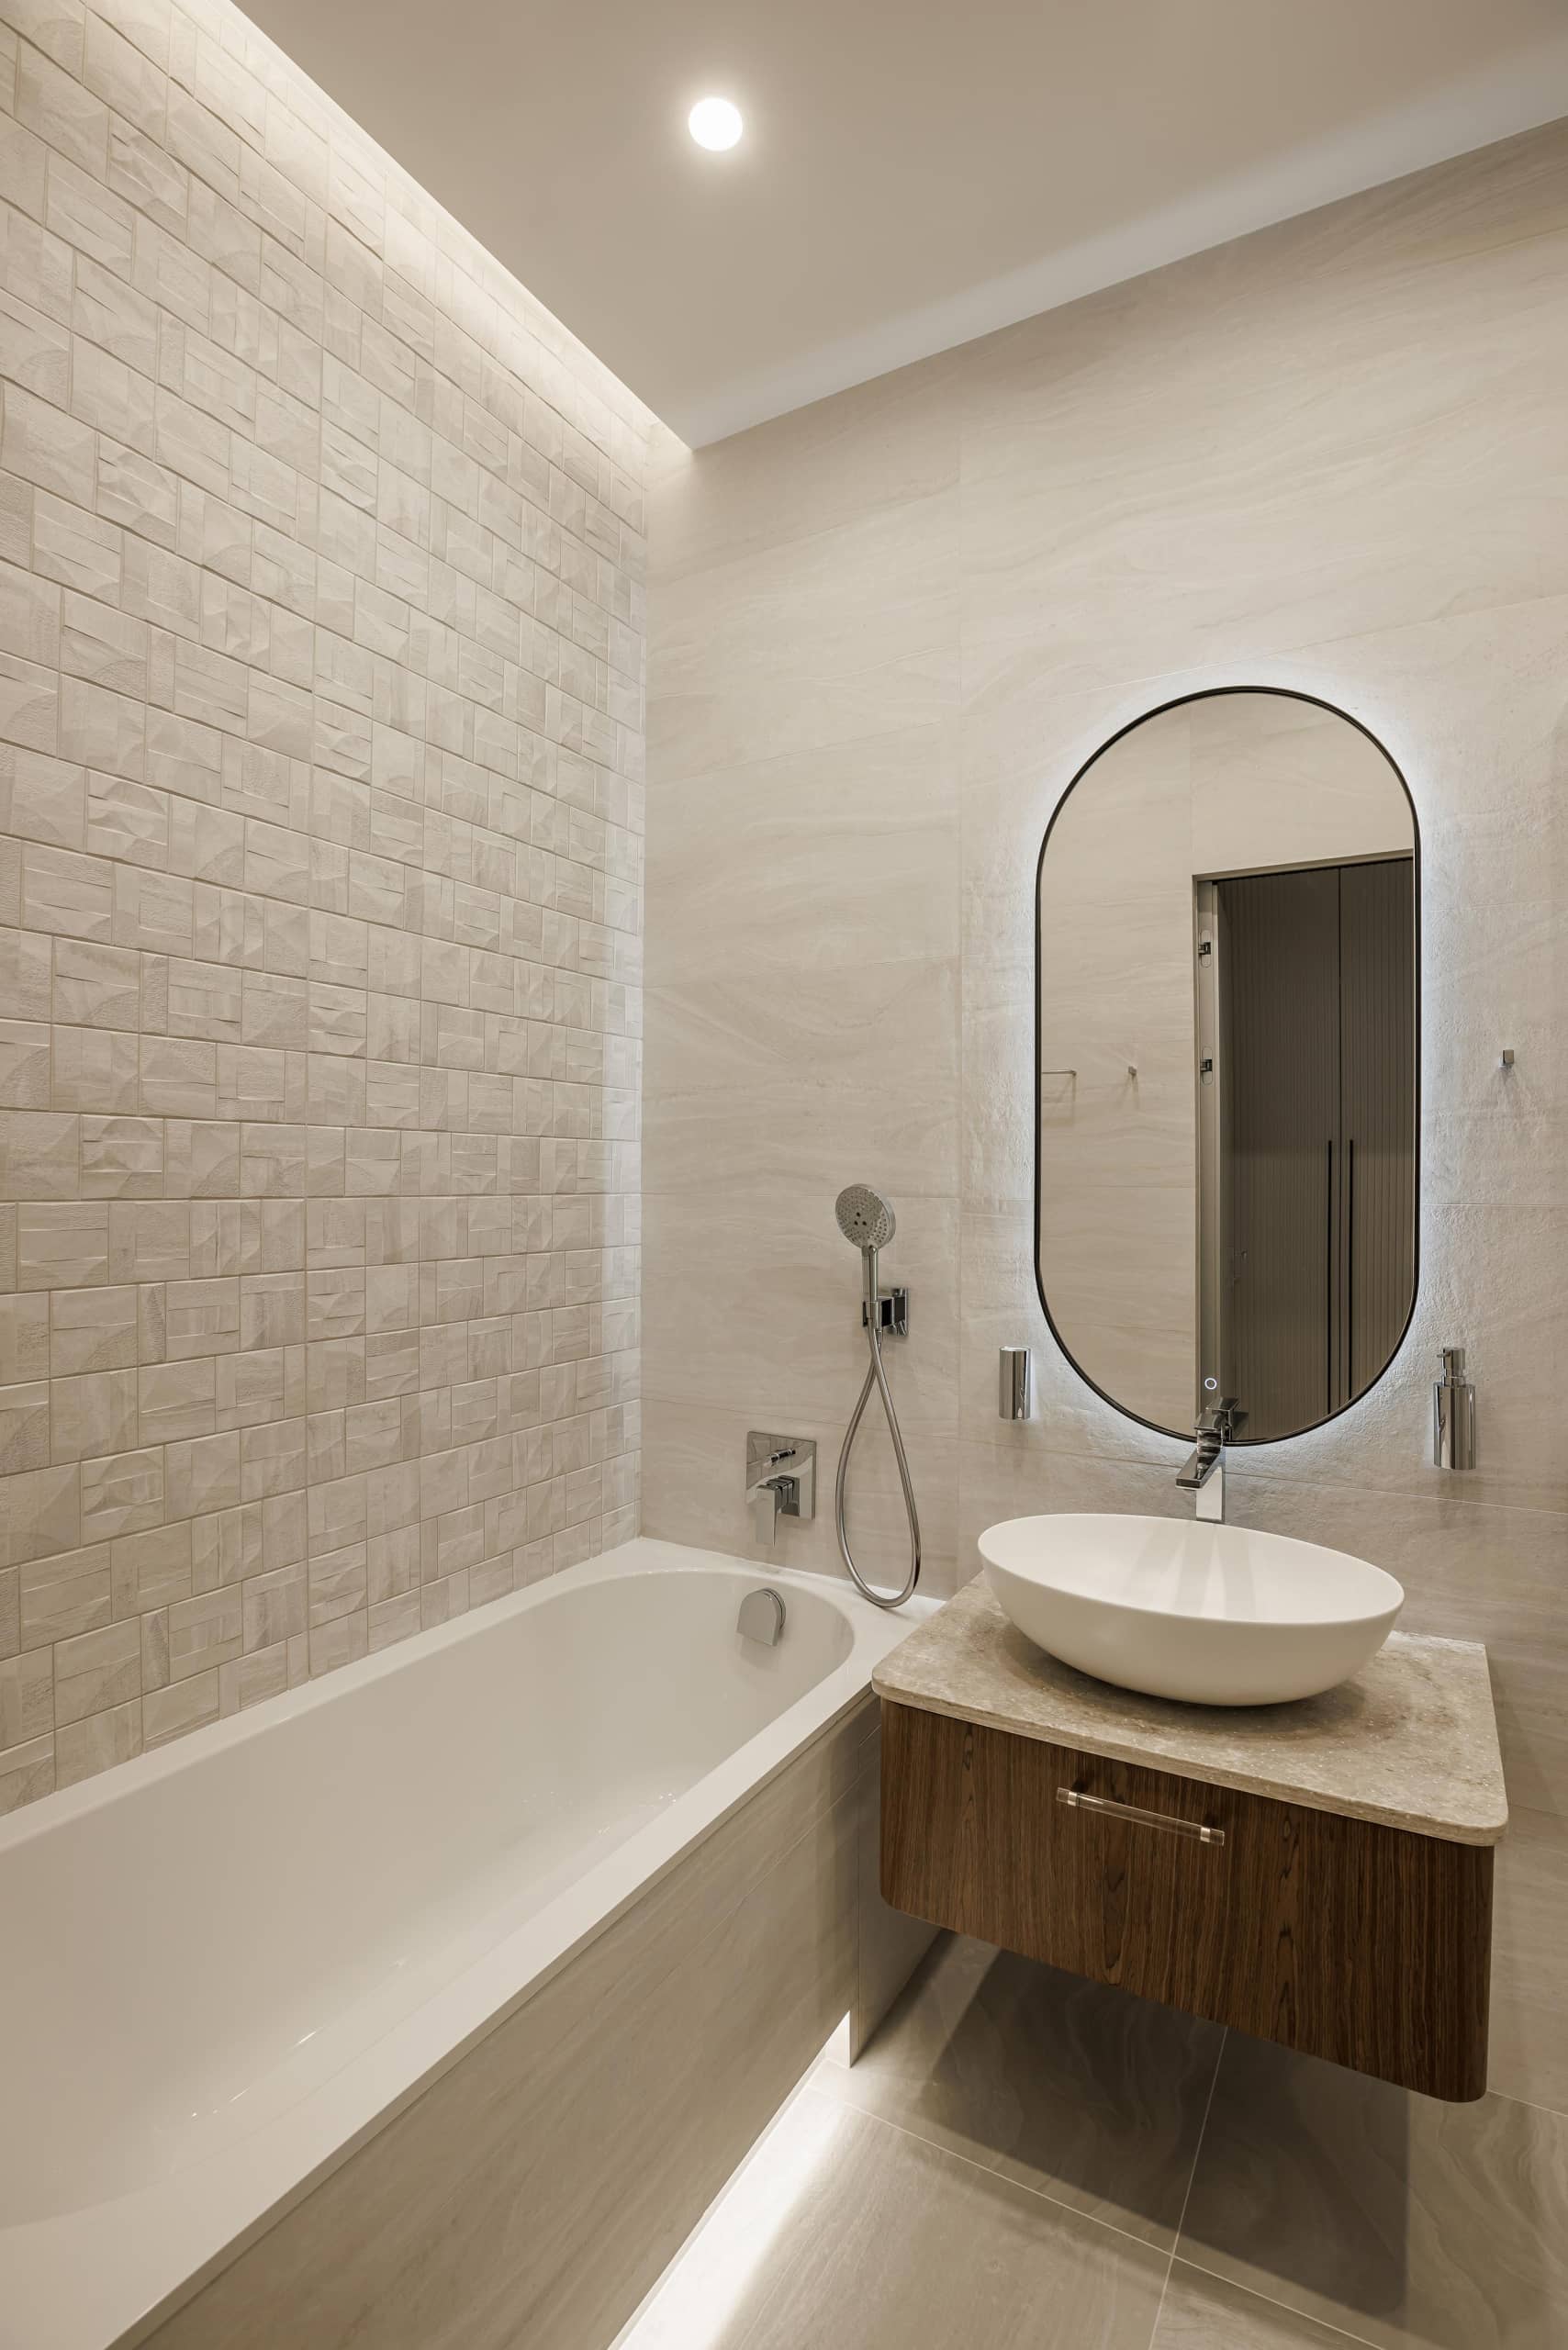 Оформление интерьера ванной комнаты в белый цвет. Фото № 70101.